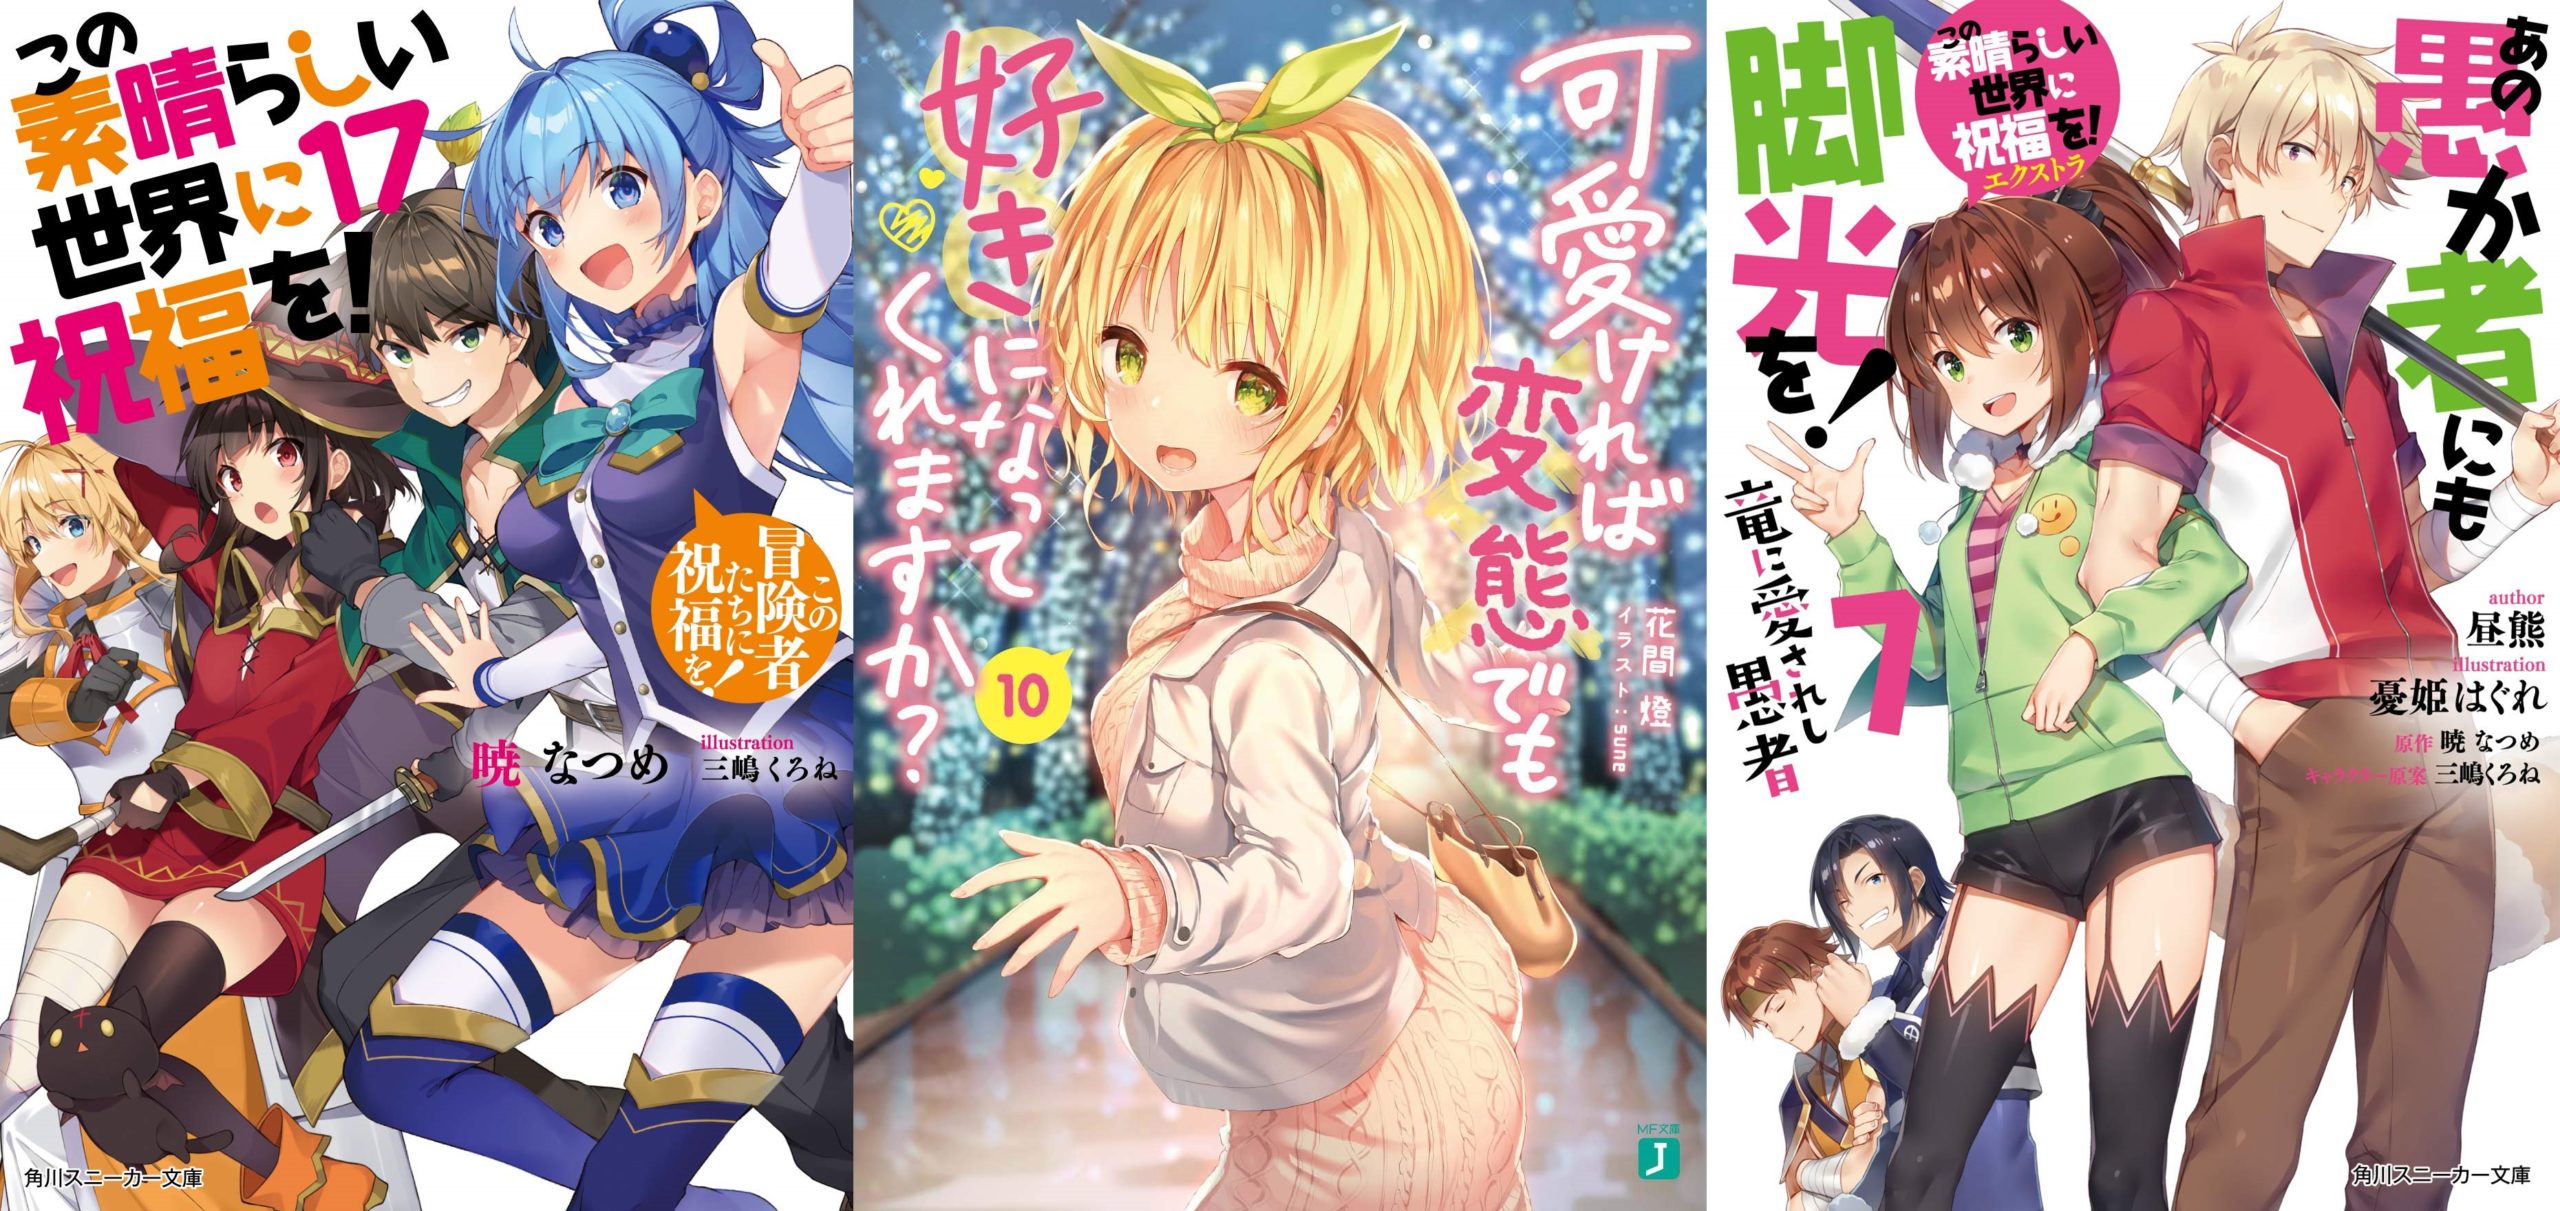 Konosuba – Novo anime é anunciado - Manga Livre RS